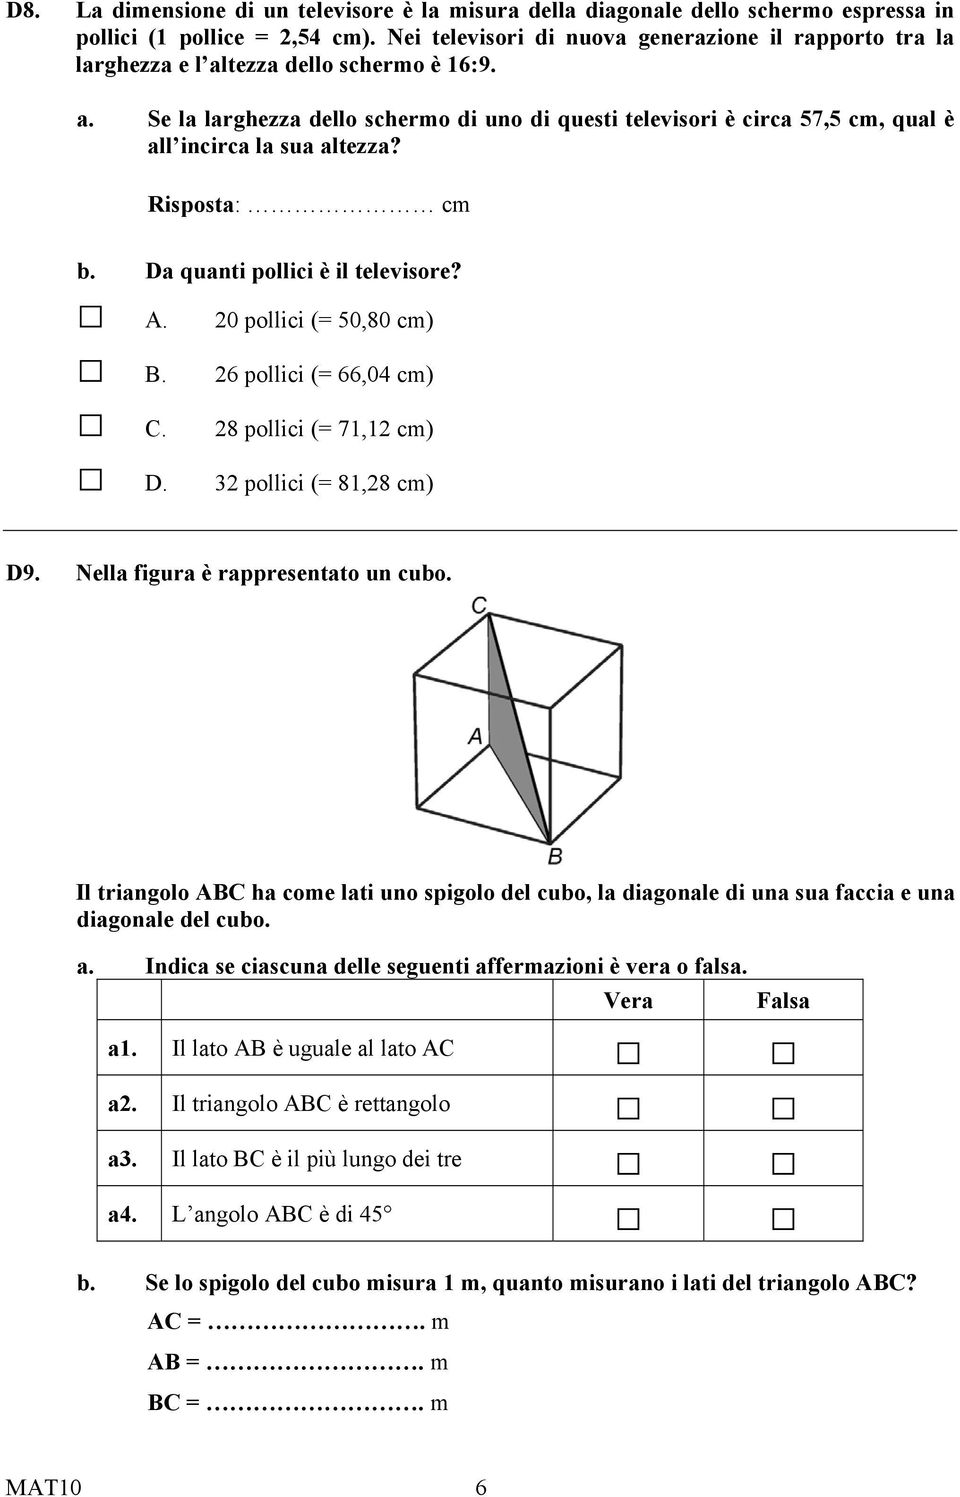 Risposta: cm b. Da quanti pollici è il televisore? A. 20 pollici (= 50,80 cm) B. 26 pollici (= 66,04 cm) C. 28 pollici (= 71,12 cm) D. 32 pollici (= 81,28 cm) D9. Nella figura è rappresentato un cubo.